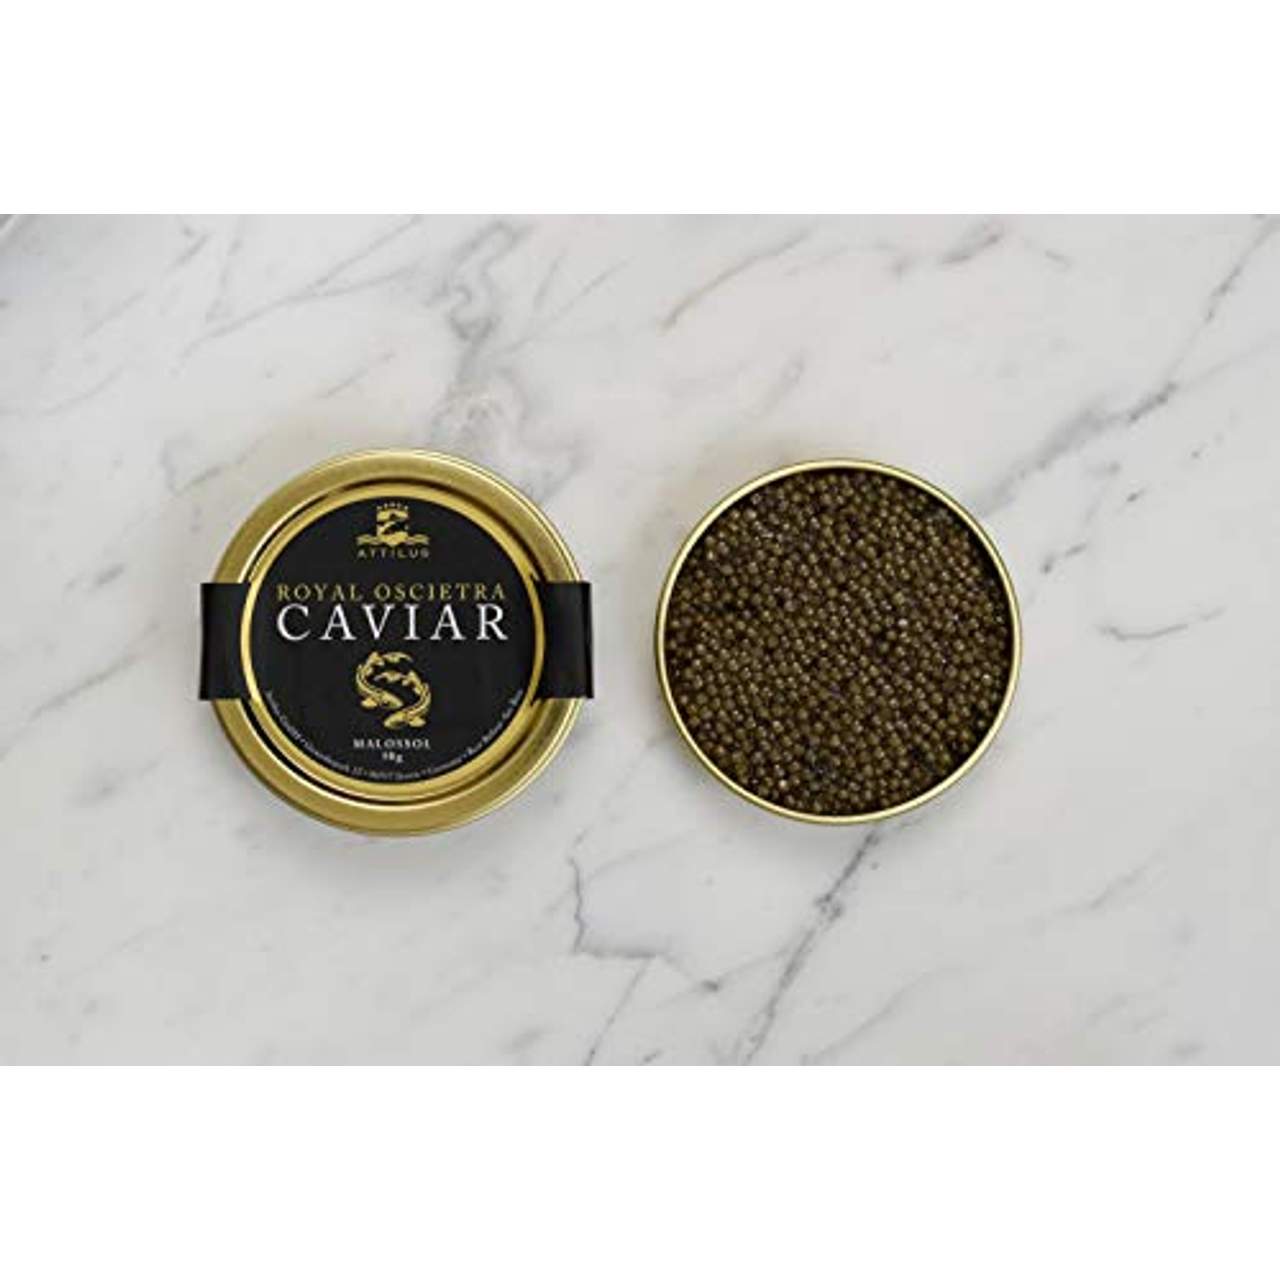 Attilus Kaviar Royal Oscietra Caviar (50g)